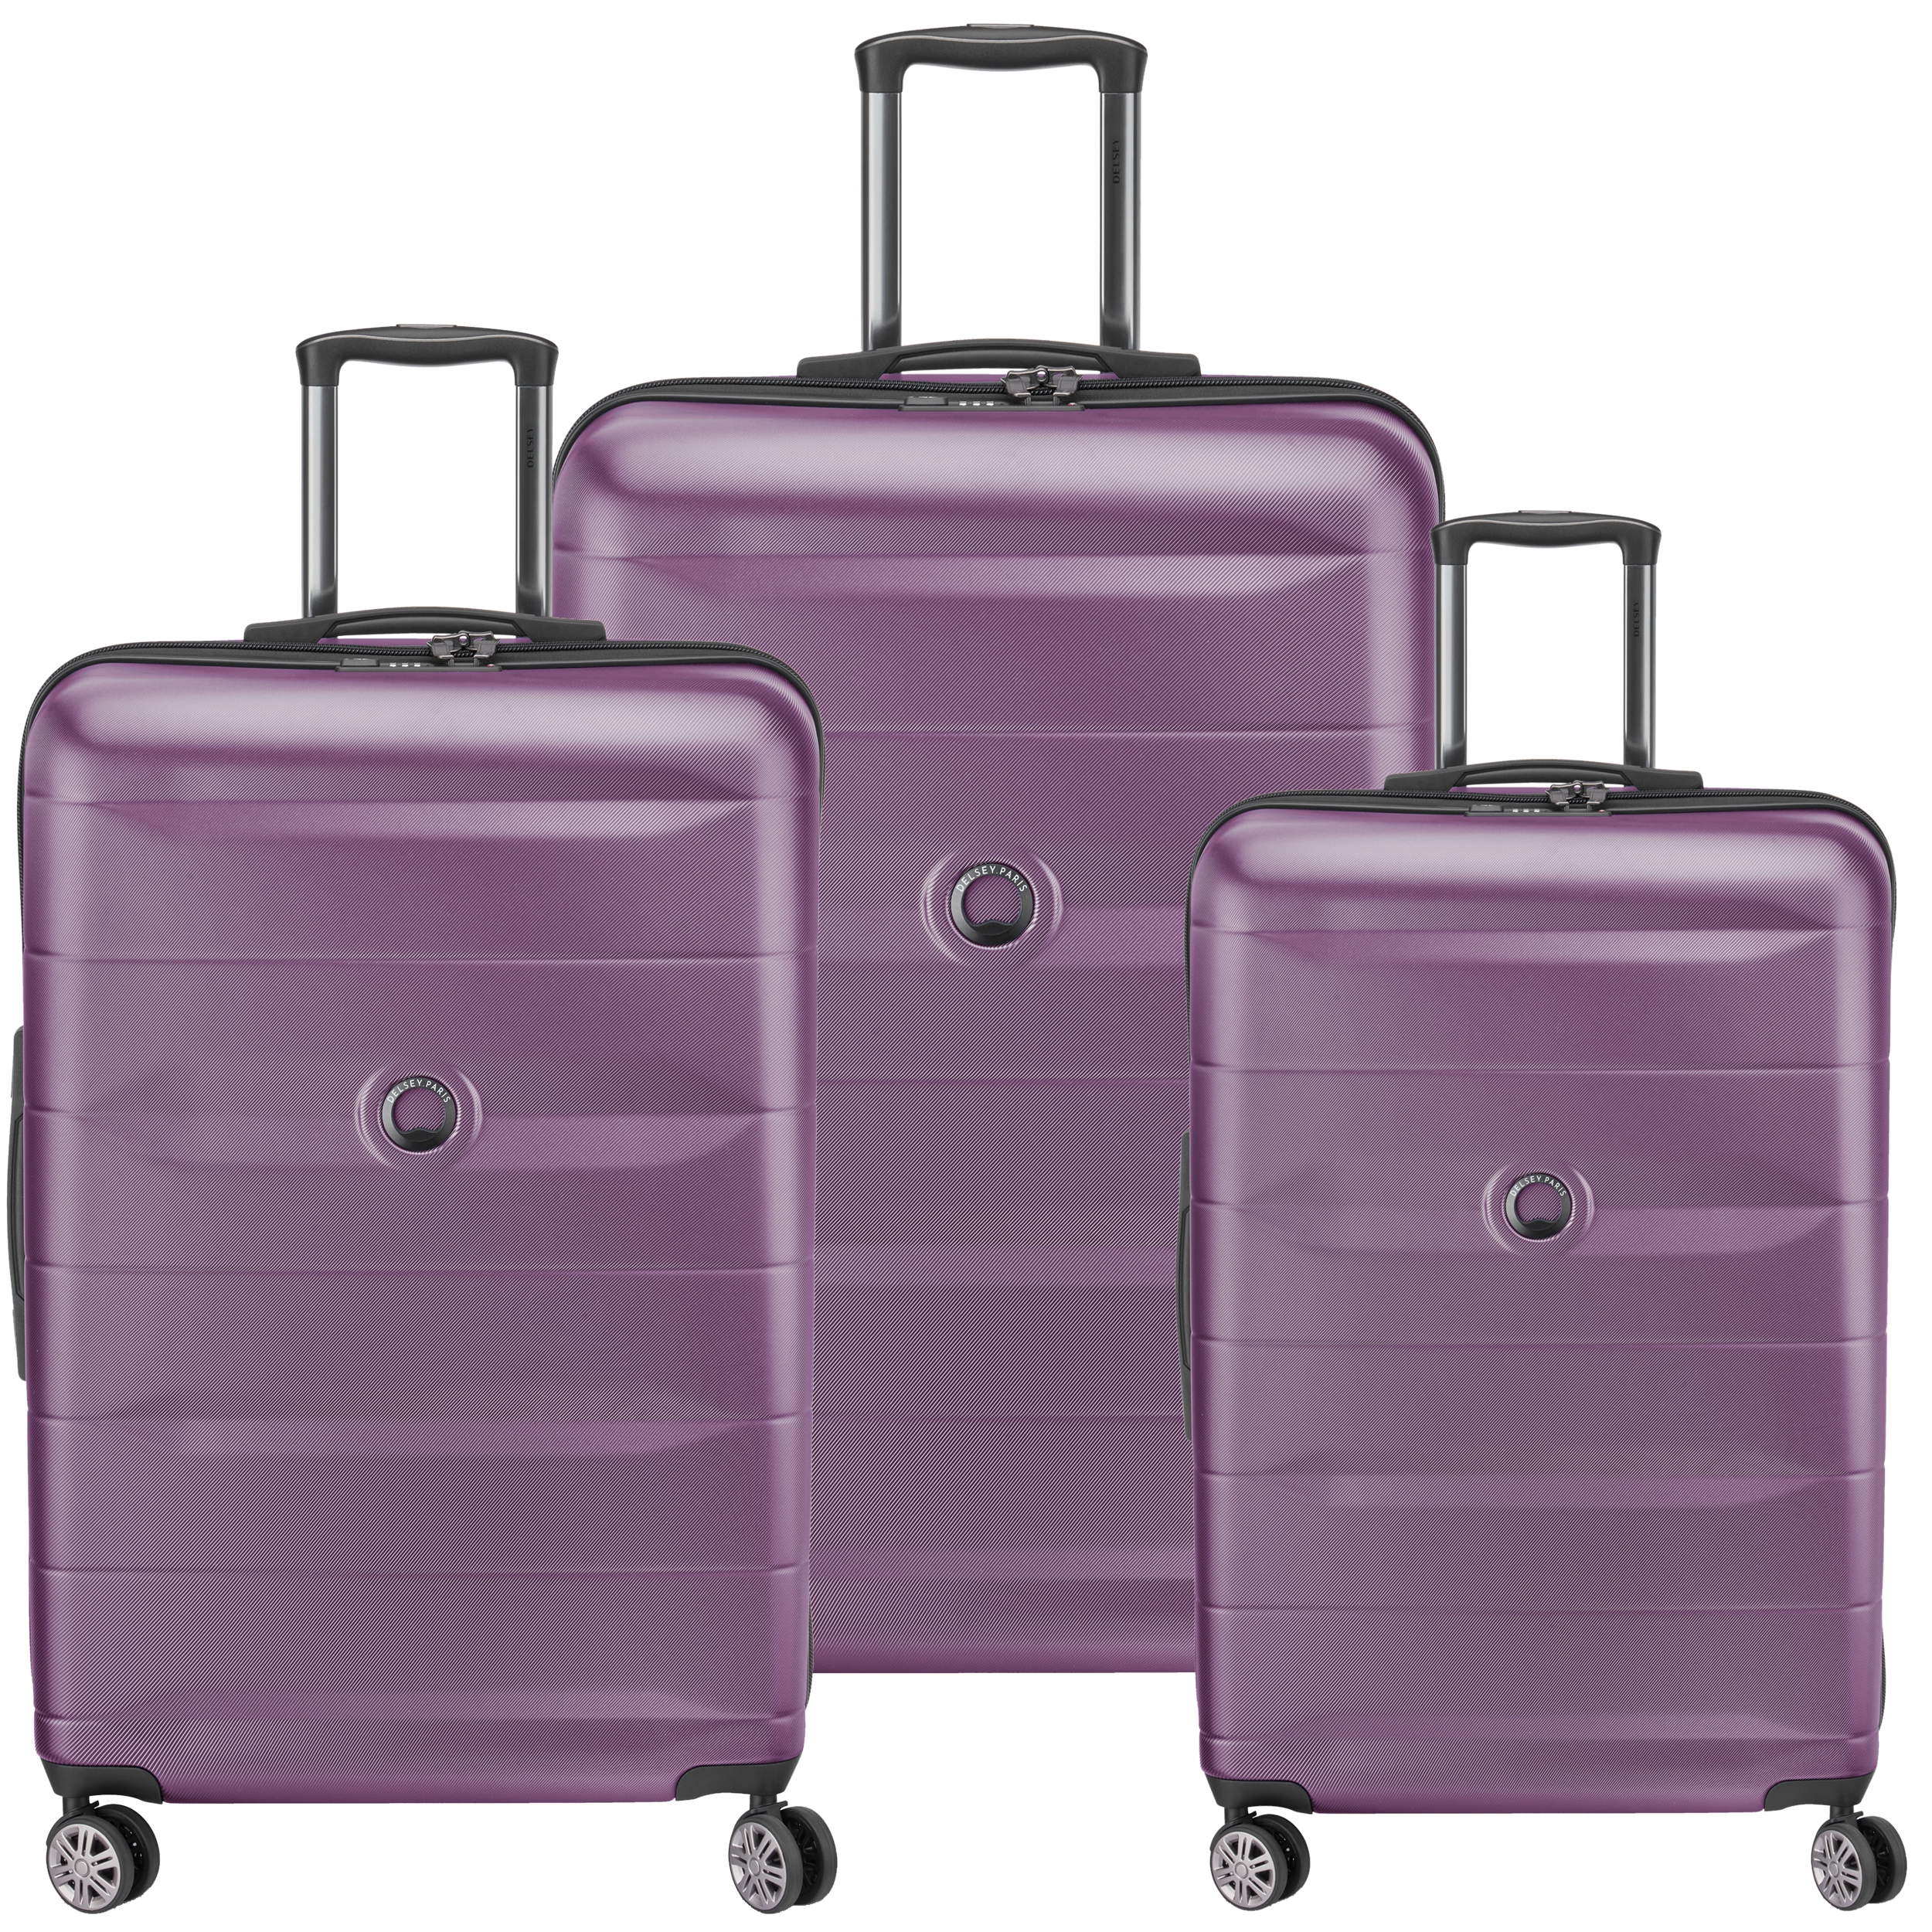 مجموعه 3 عددی چمدان دلسی مدل COMETE PLUS کد 3041980